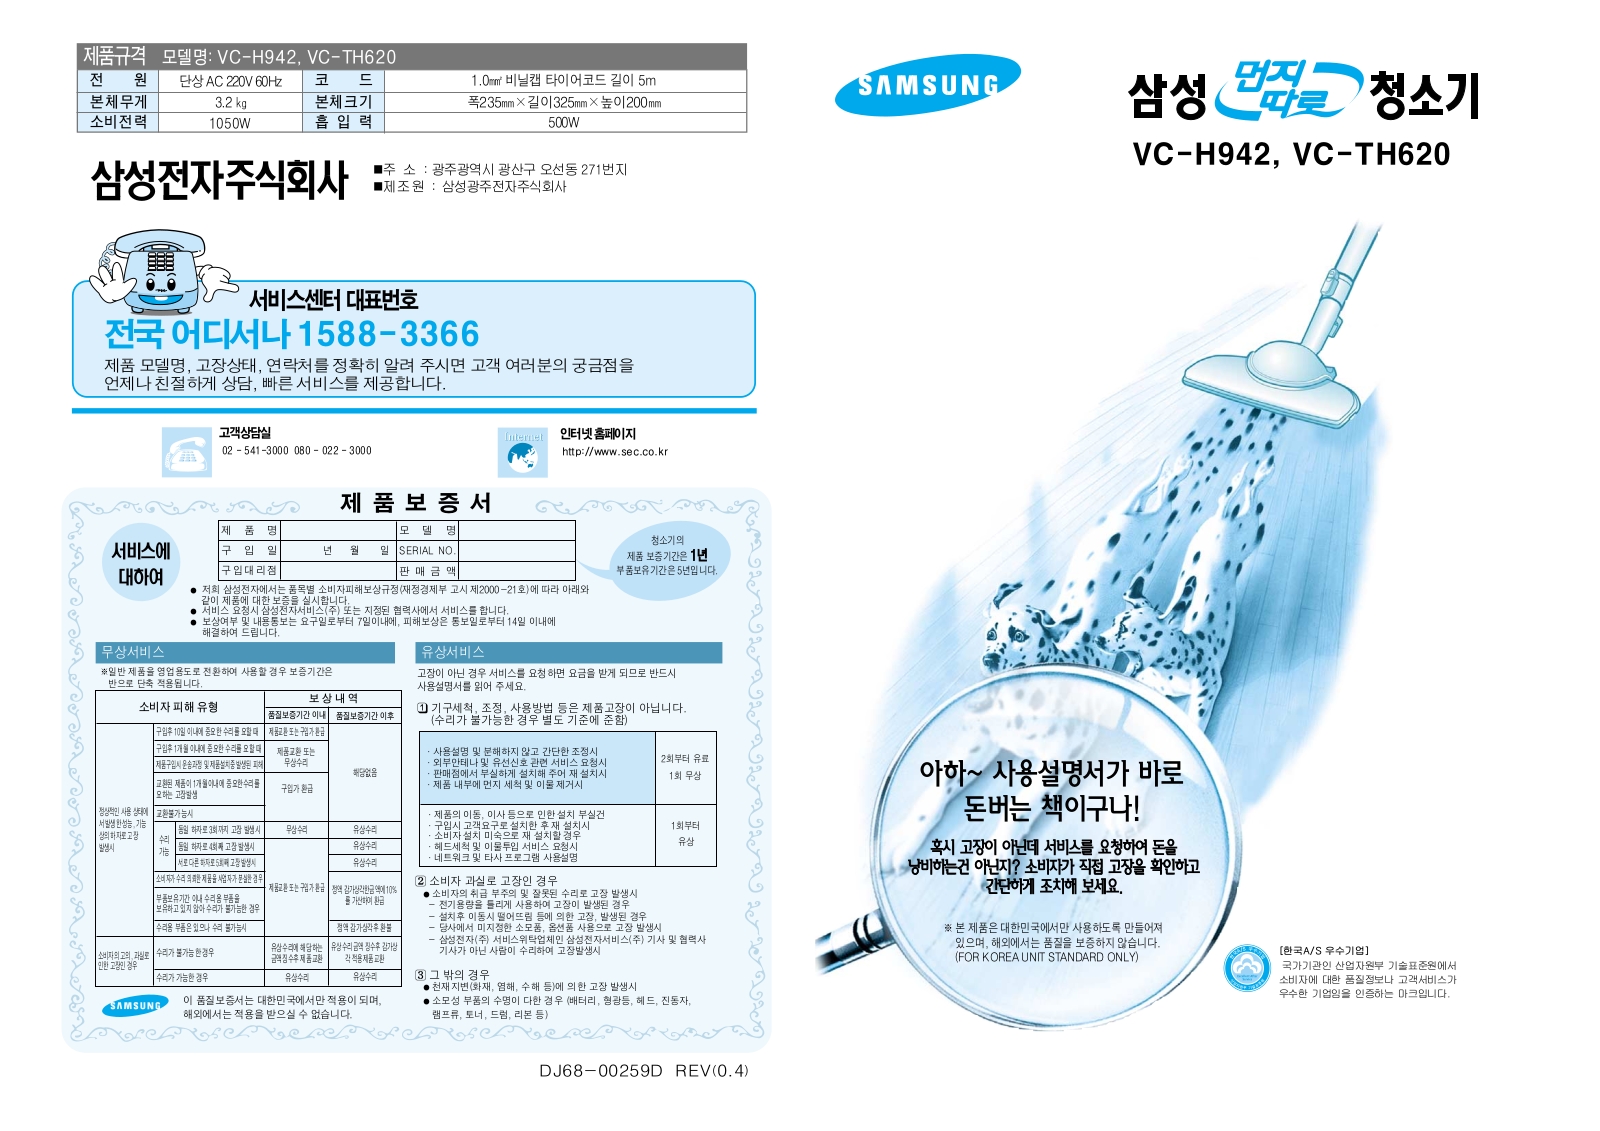 Samsung VC-TH620, VC-H942 User Manual